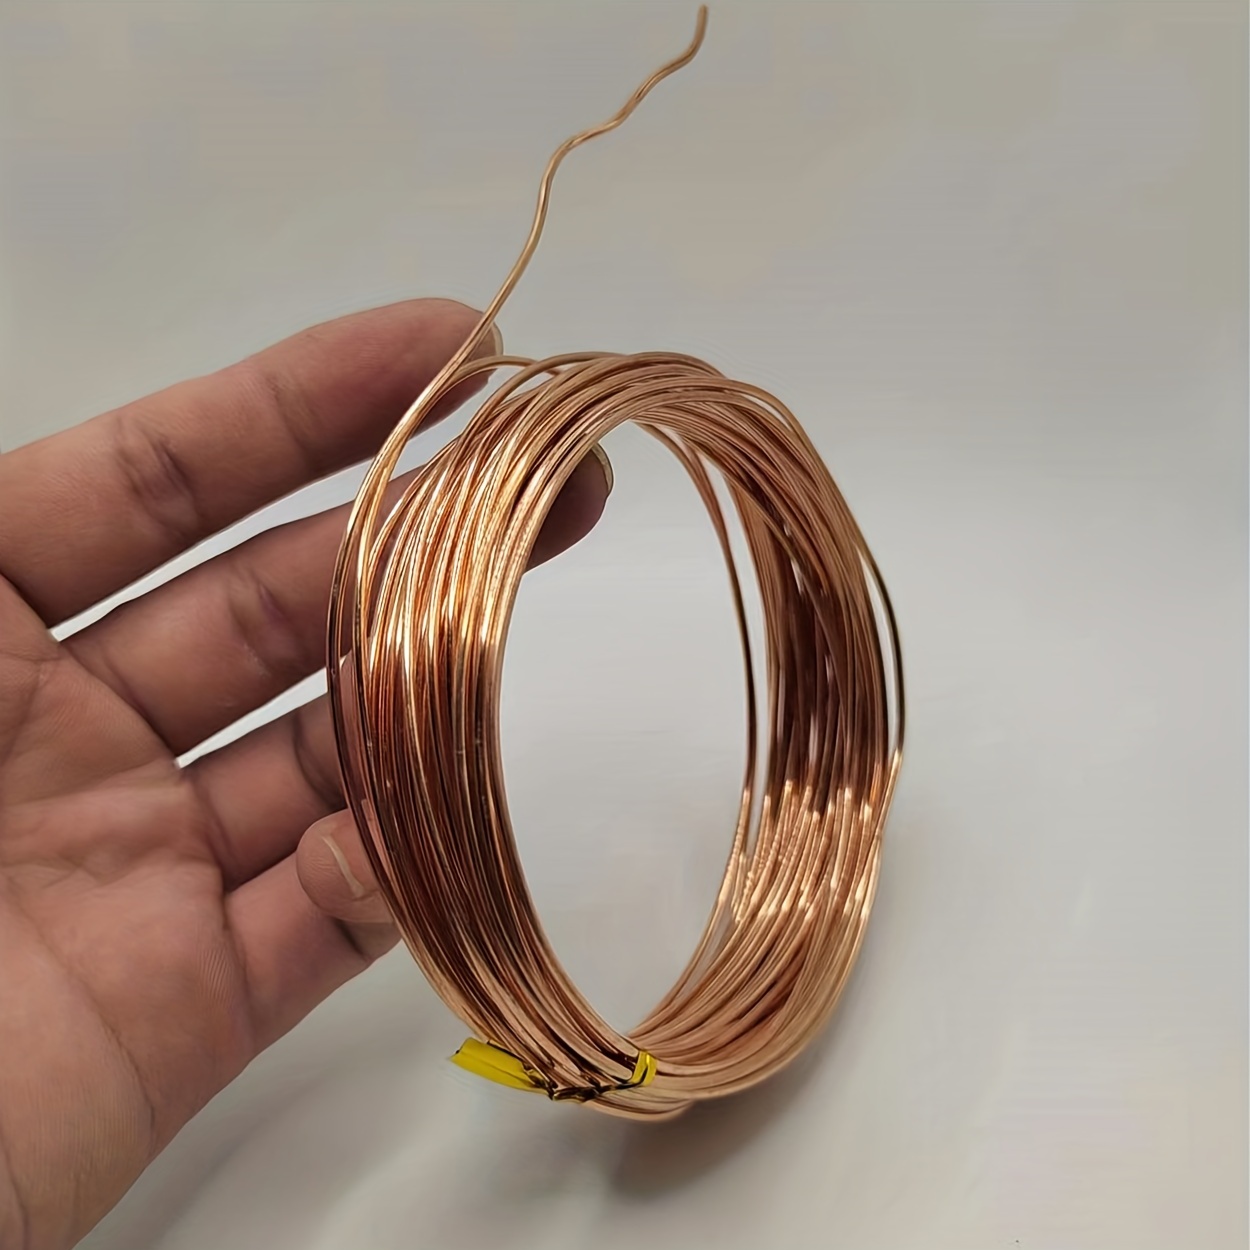 1 fil de cuivre rond en cuivre nu, diamètre du fil 0,6 mm, environ